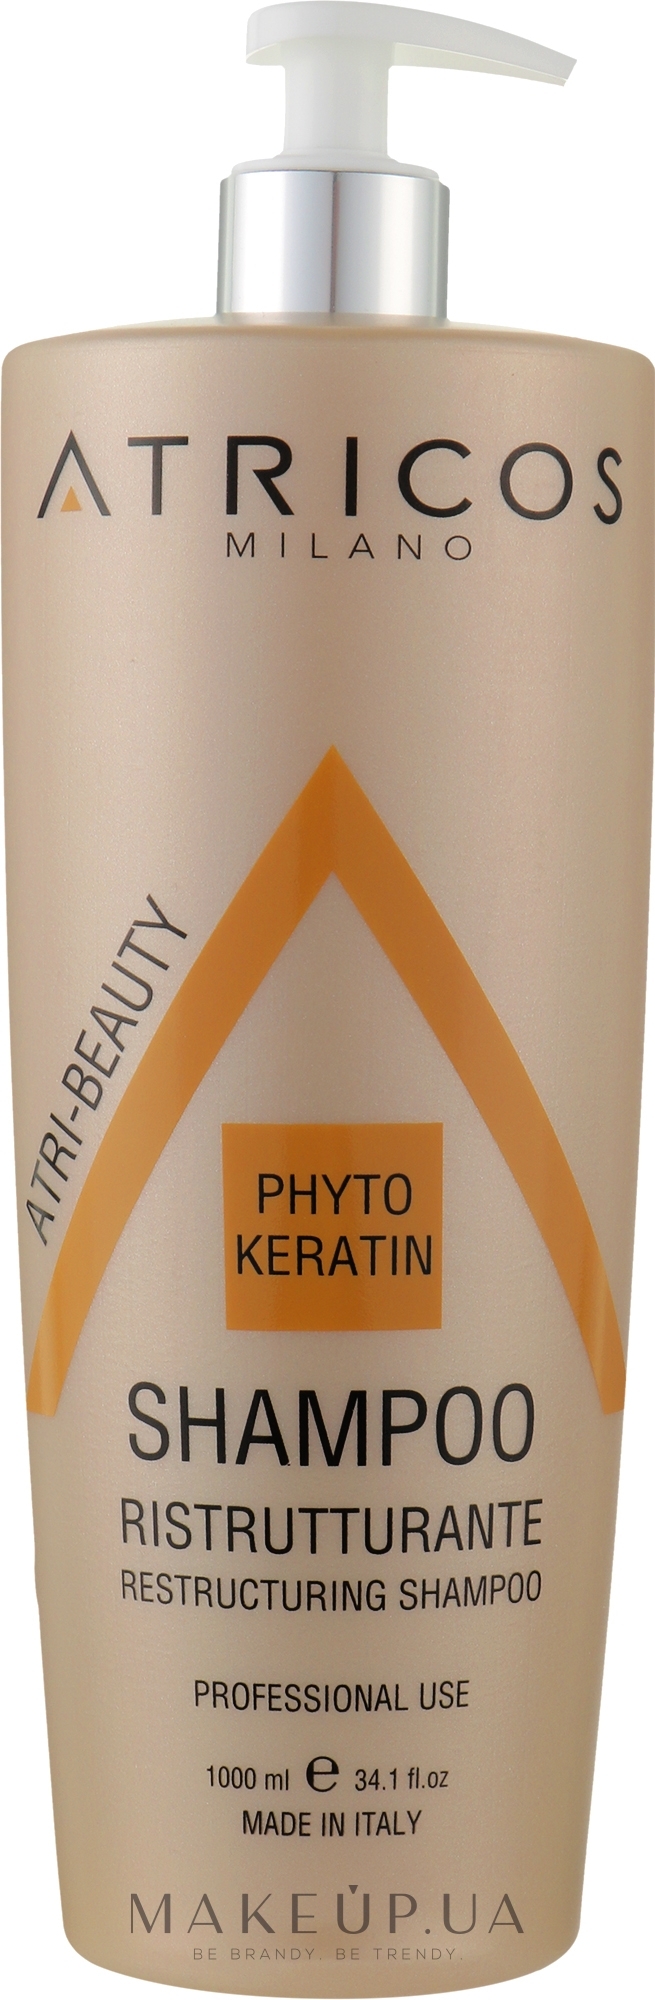 Шампунь с фитокератином для реструктуризации волос - Atricos Phyto Keratin Restructuring Shampoo — фото 1000ml